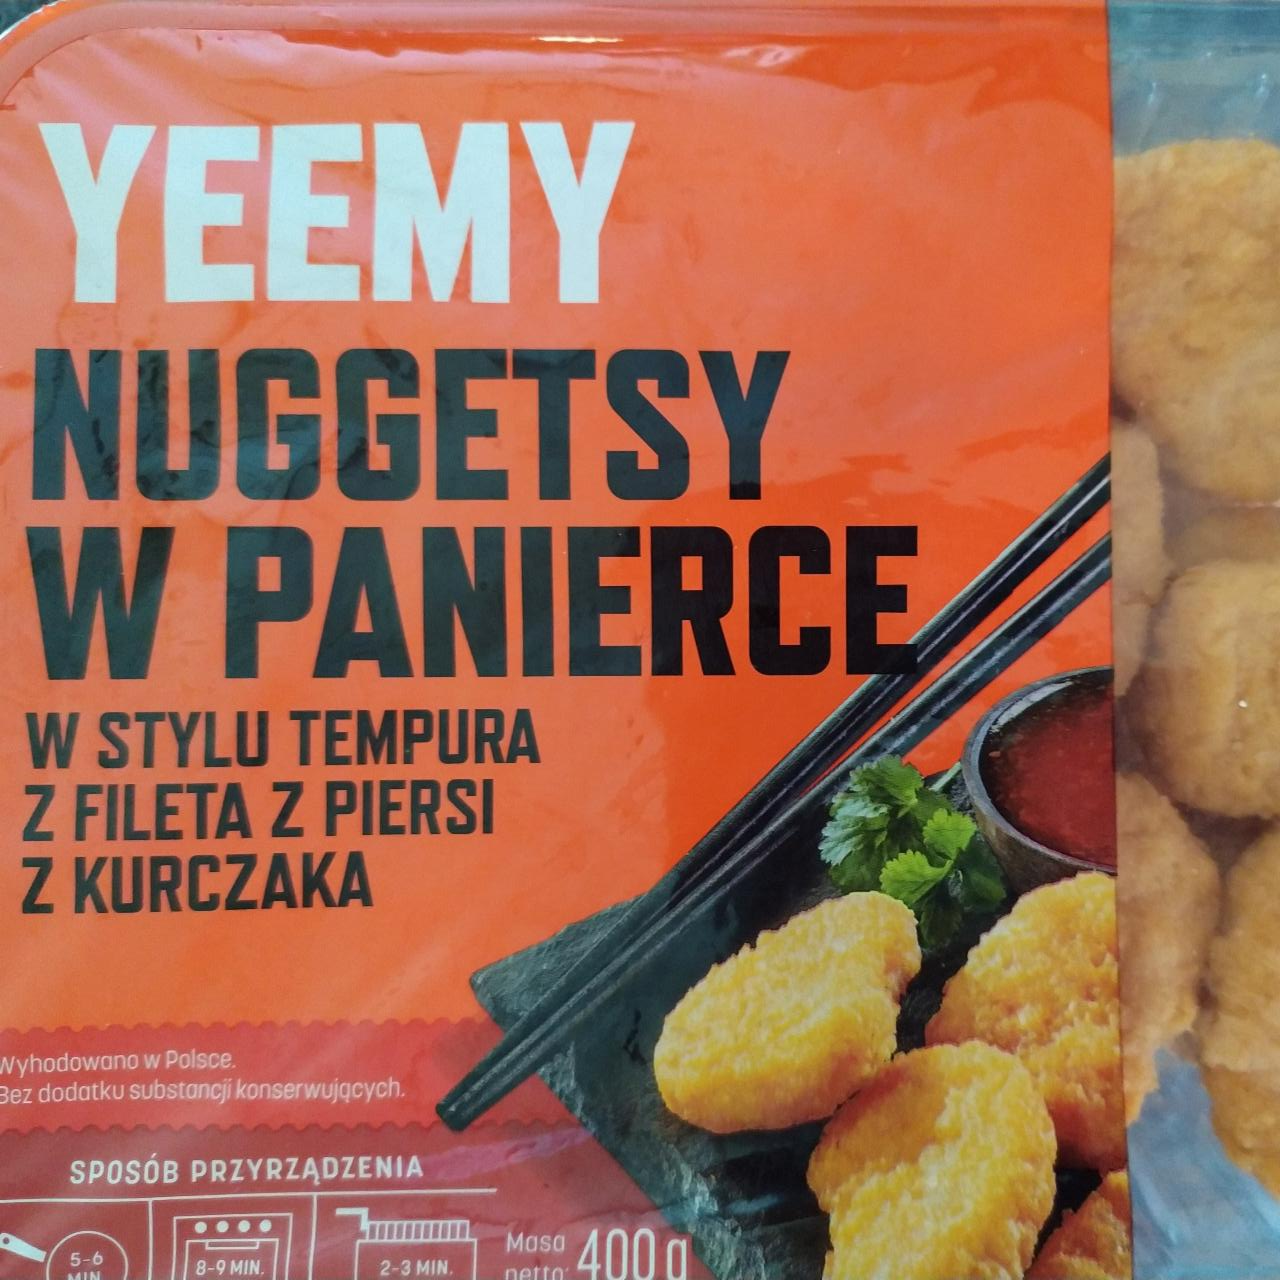 Fotografie - Nuggetsy w panierce w stylu tempura z fileta z piersi z kurczaka Yeemy